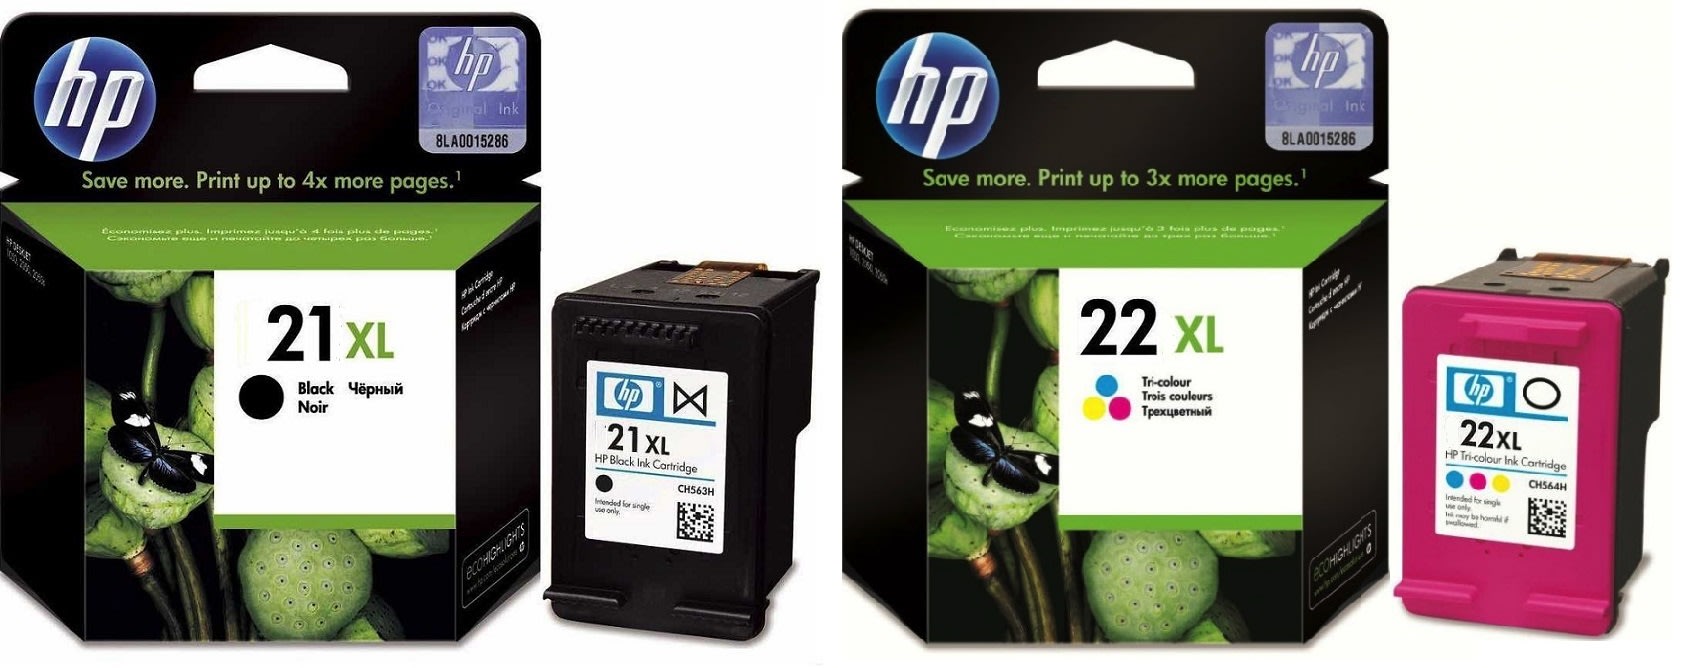 Картриджи hp 21XL 22XL для HP Deskjet F2280. Купить комплект оригинальных чернил.